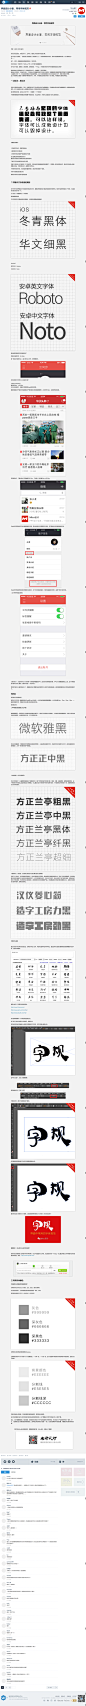 界面设计必备，常用字体规范-UI中国-专业界面交互设计平台